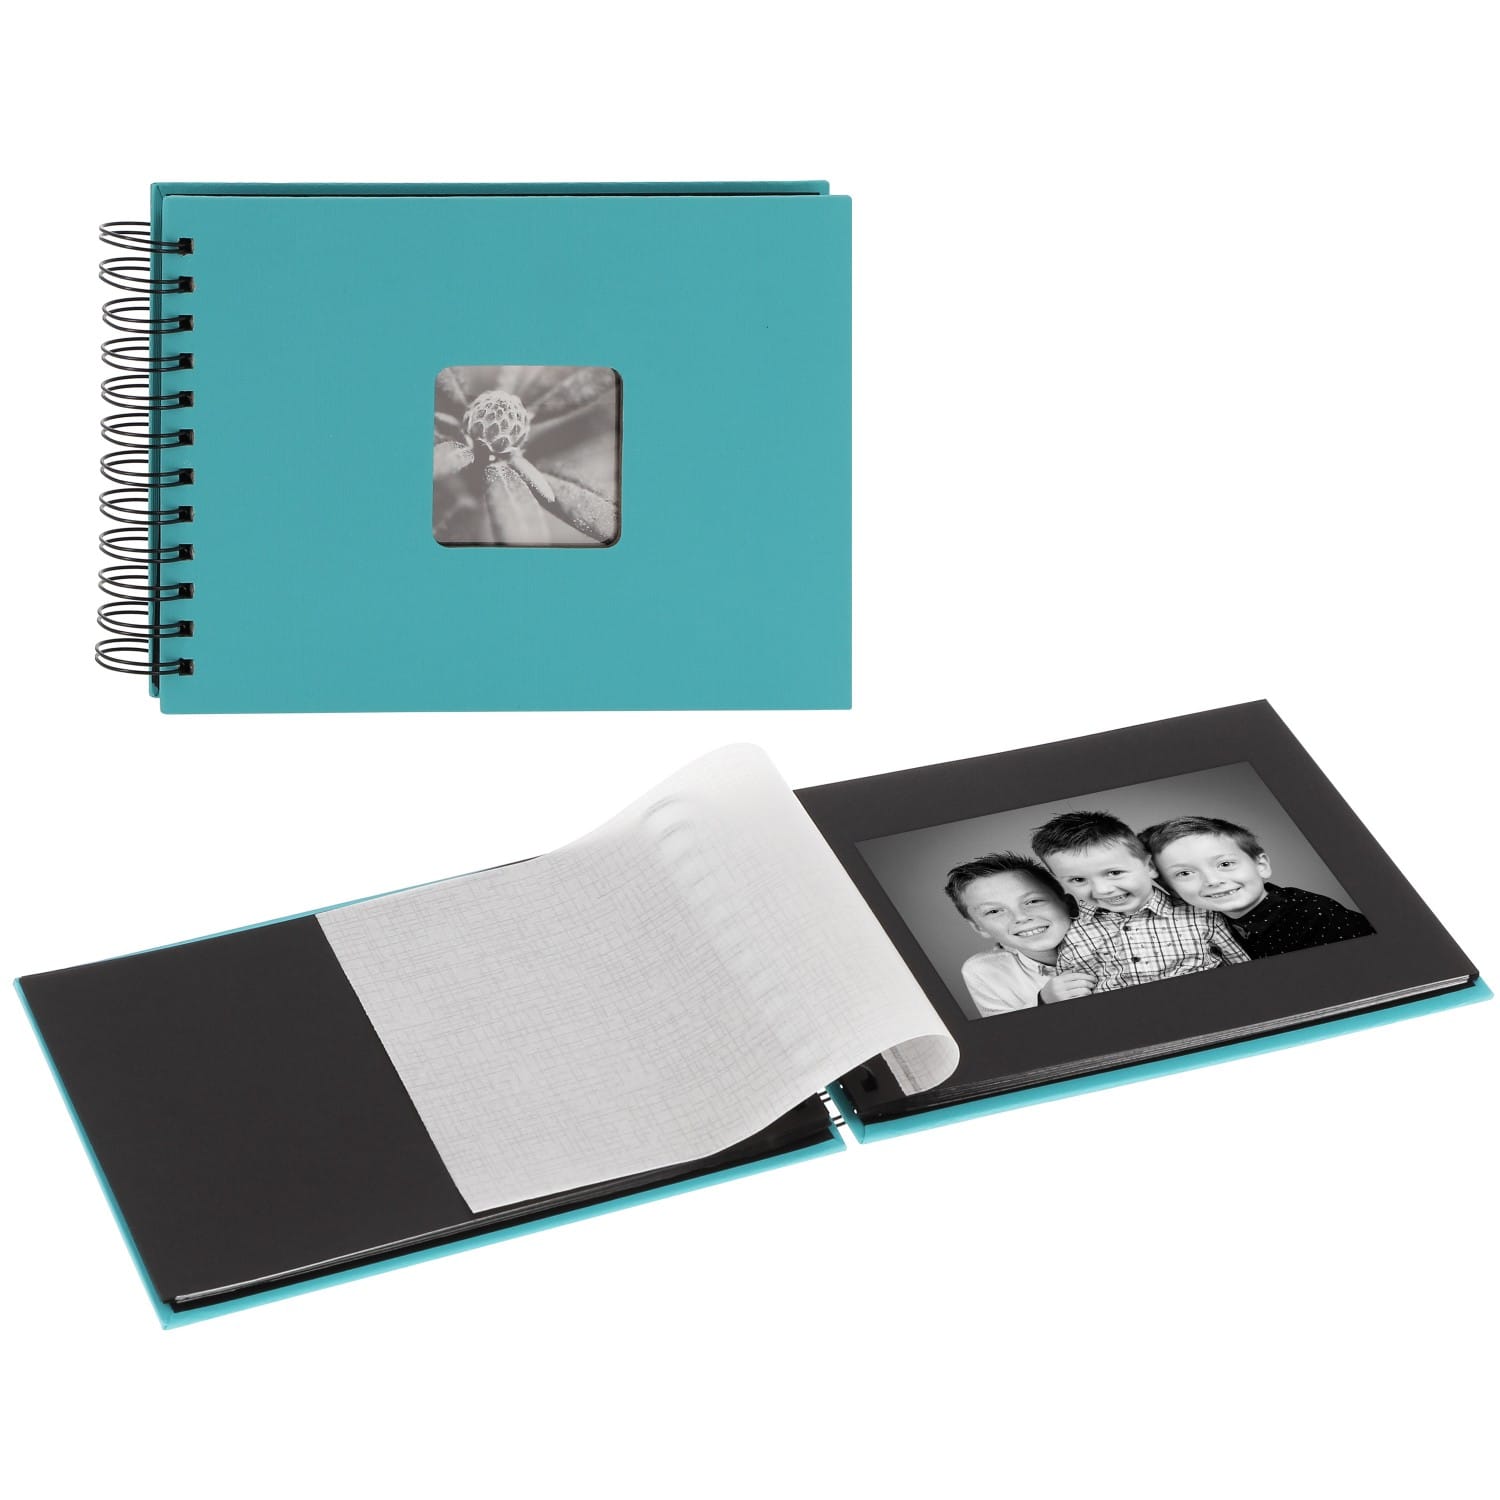 Mini ART + album noires FINE HAMA traditionnel 50 Couverture cristal pages 50 SPIRAL Bleue + - photos 24x17cm - Turquoise - feuillets fenêtre